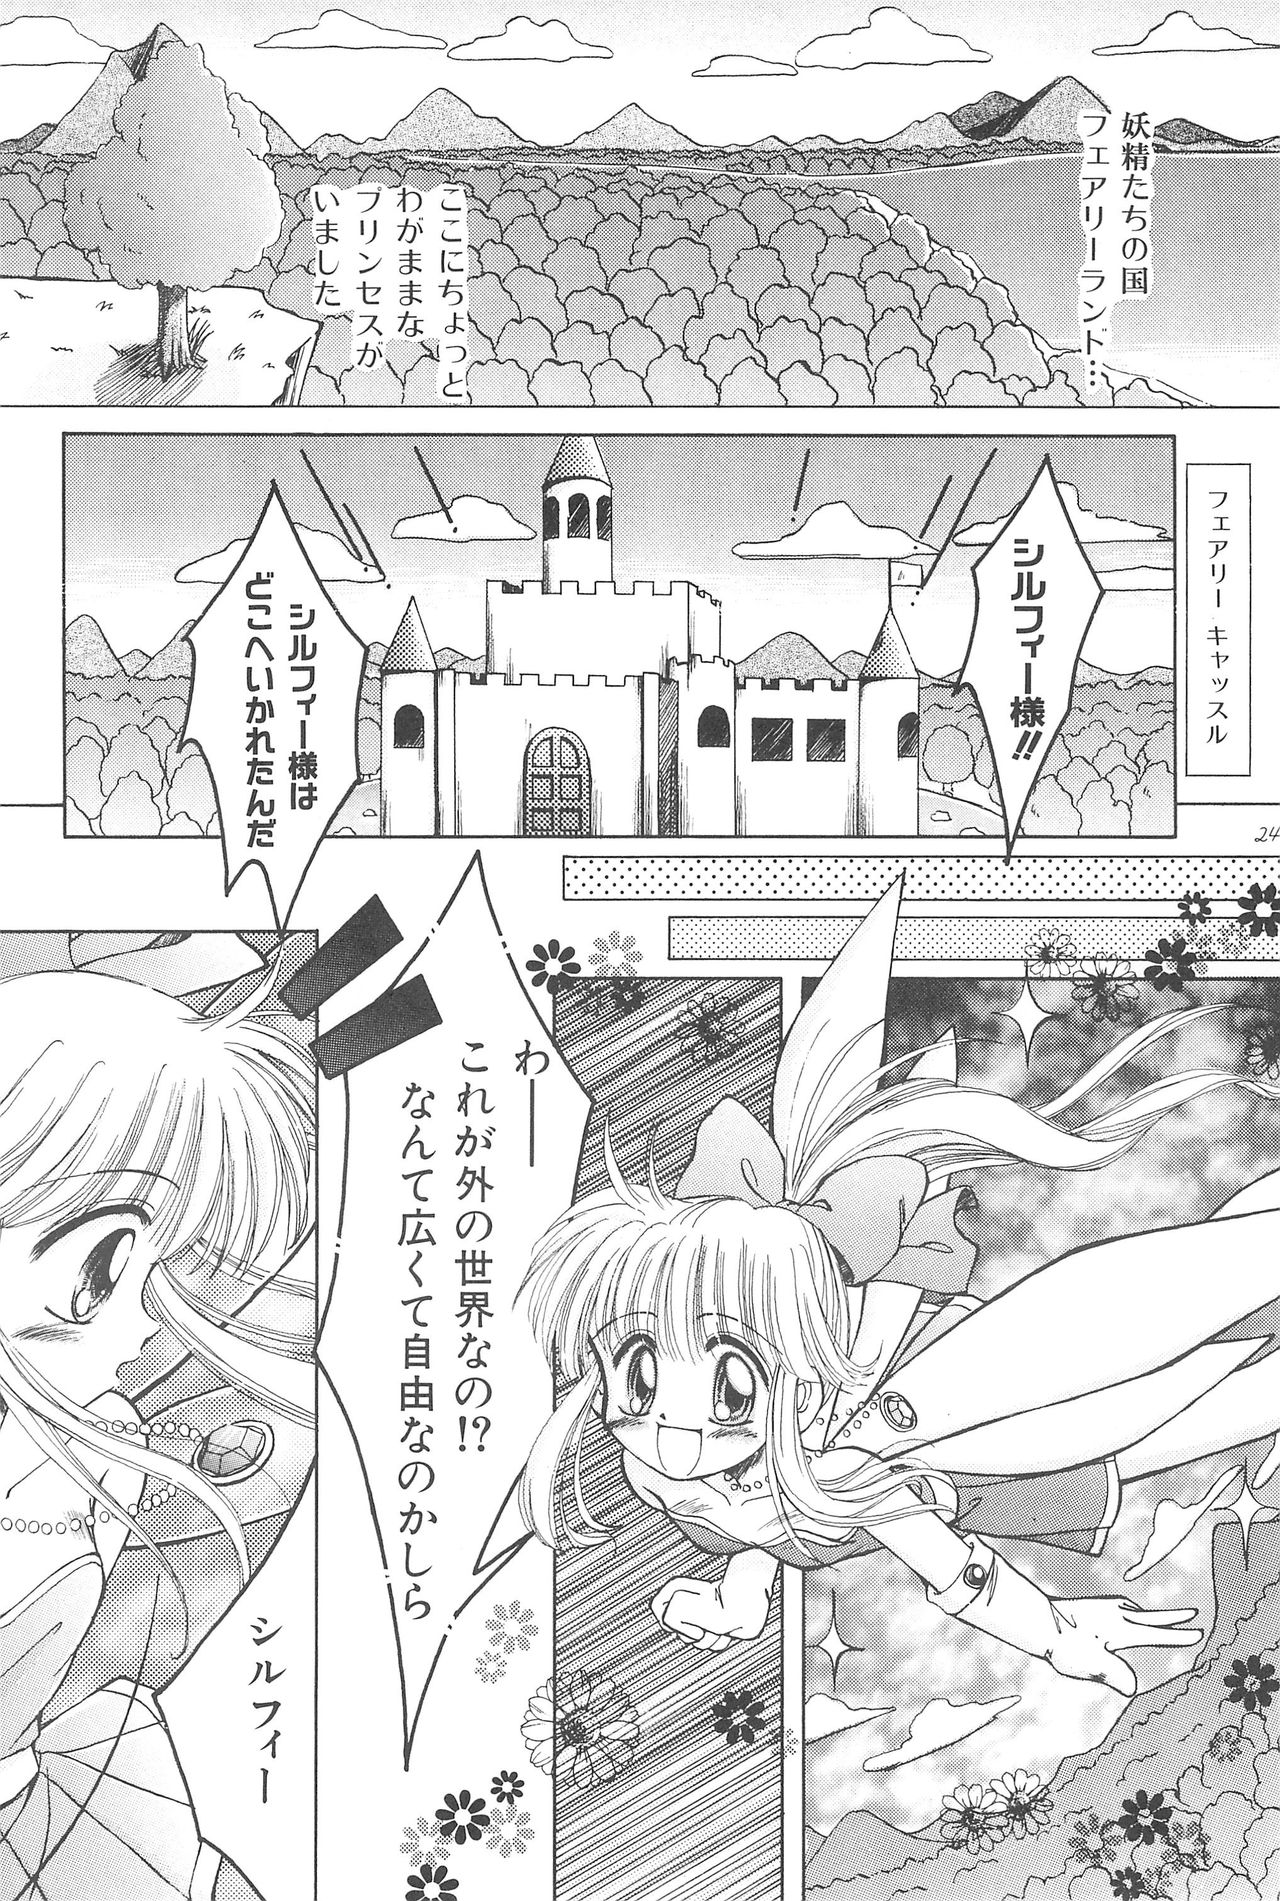 (CR23) [PHOENIX PROJECT (Kamikaze Makoto)] Okosama Lunch Original 1 page 26 full